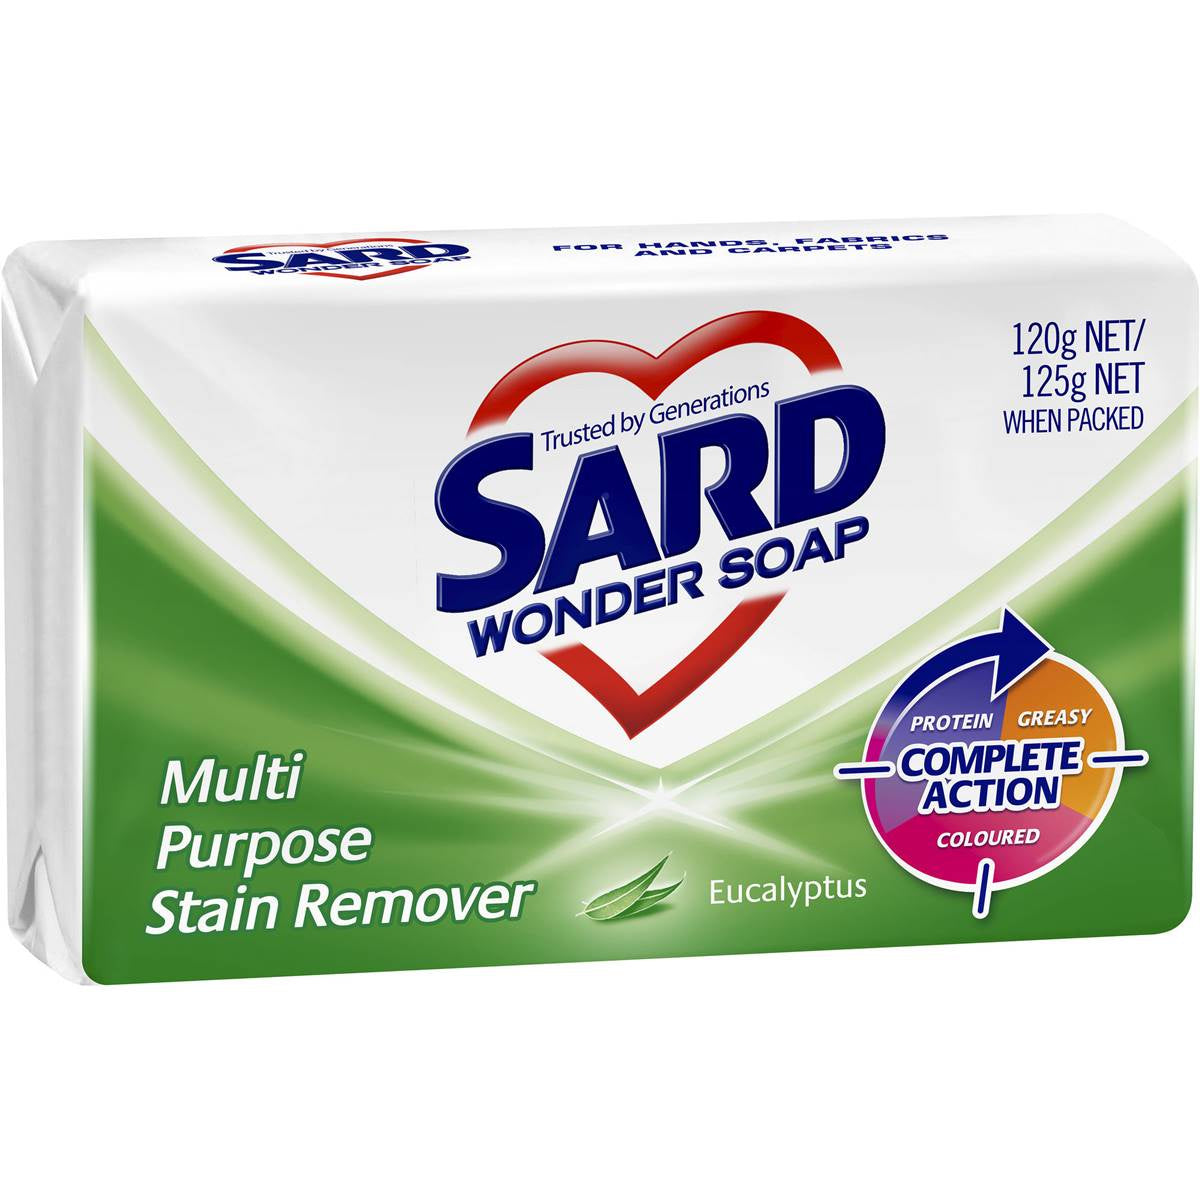 Sard Wonder Soap Multi Purpose Stain Remover Eucalyptus 120G